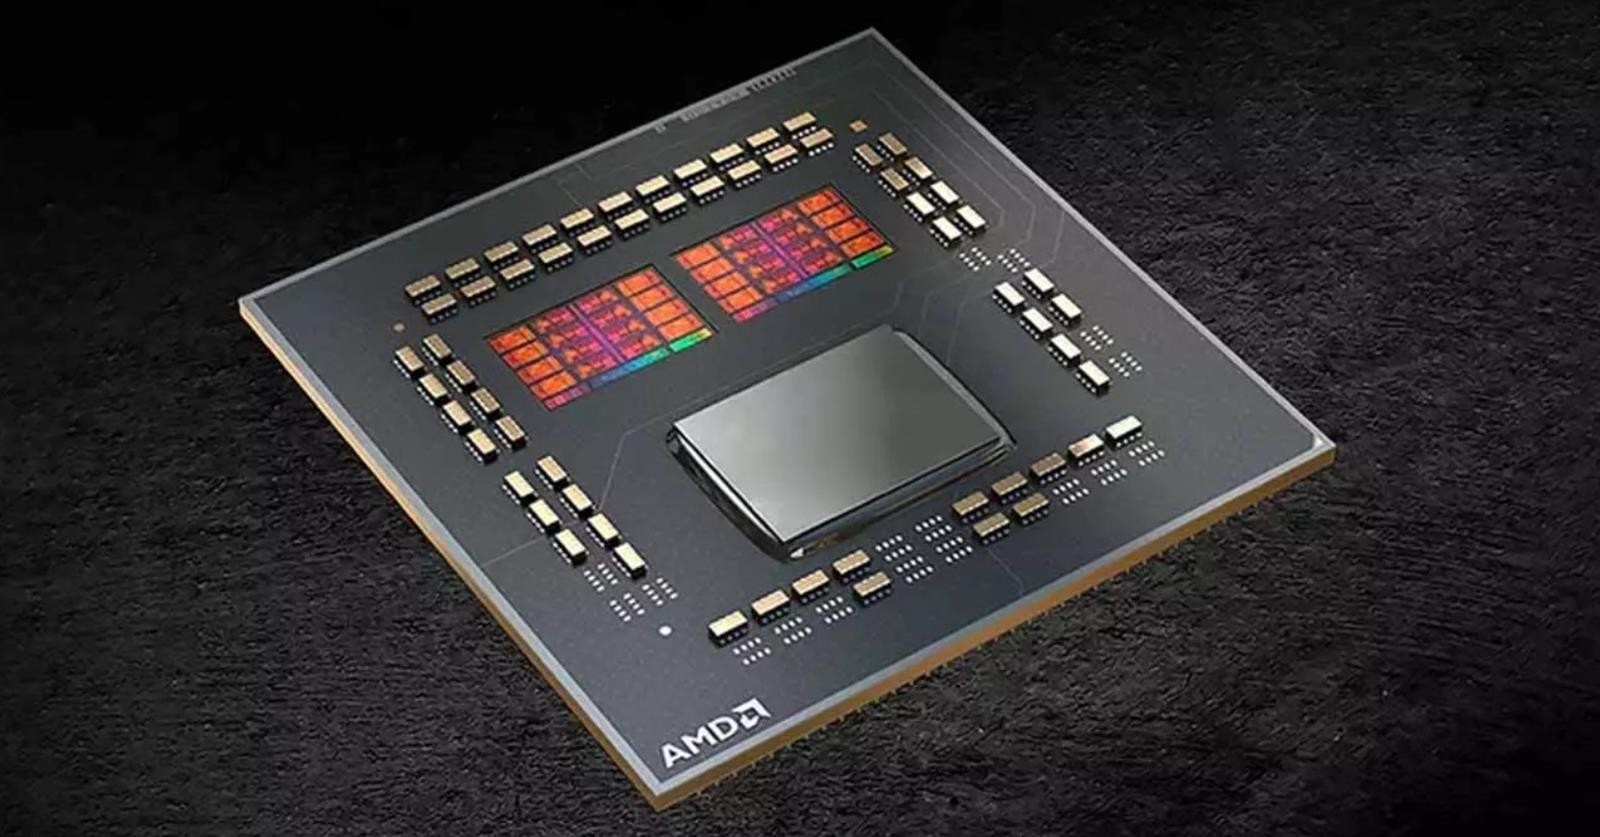 Jak AMD radzi sobie z zasilaniem Ryzenów, PPT i PBO, AMD PPT, PPT, PBO, (Package Power Tracking